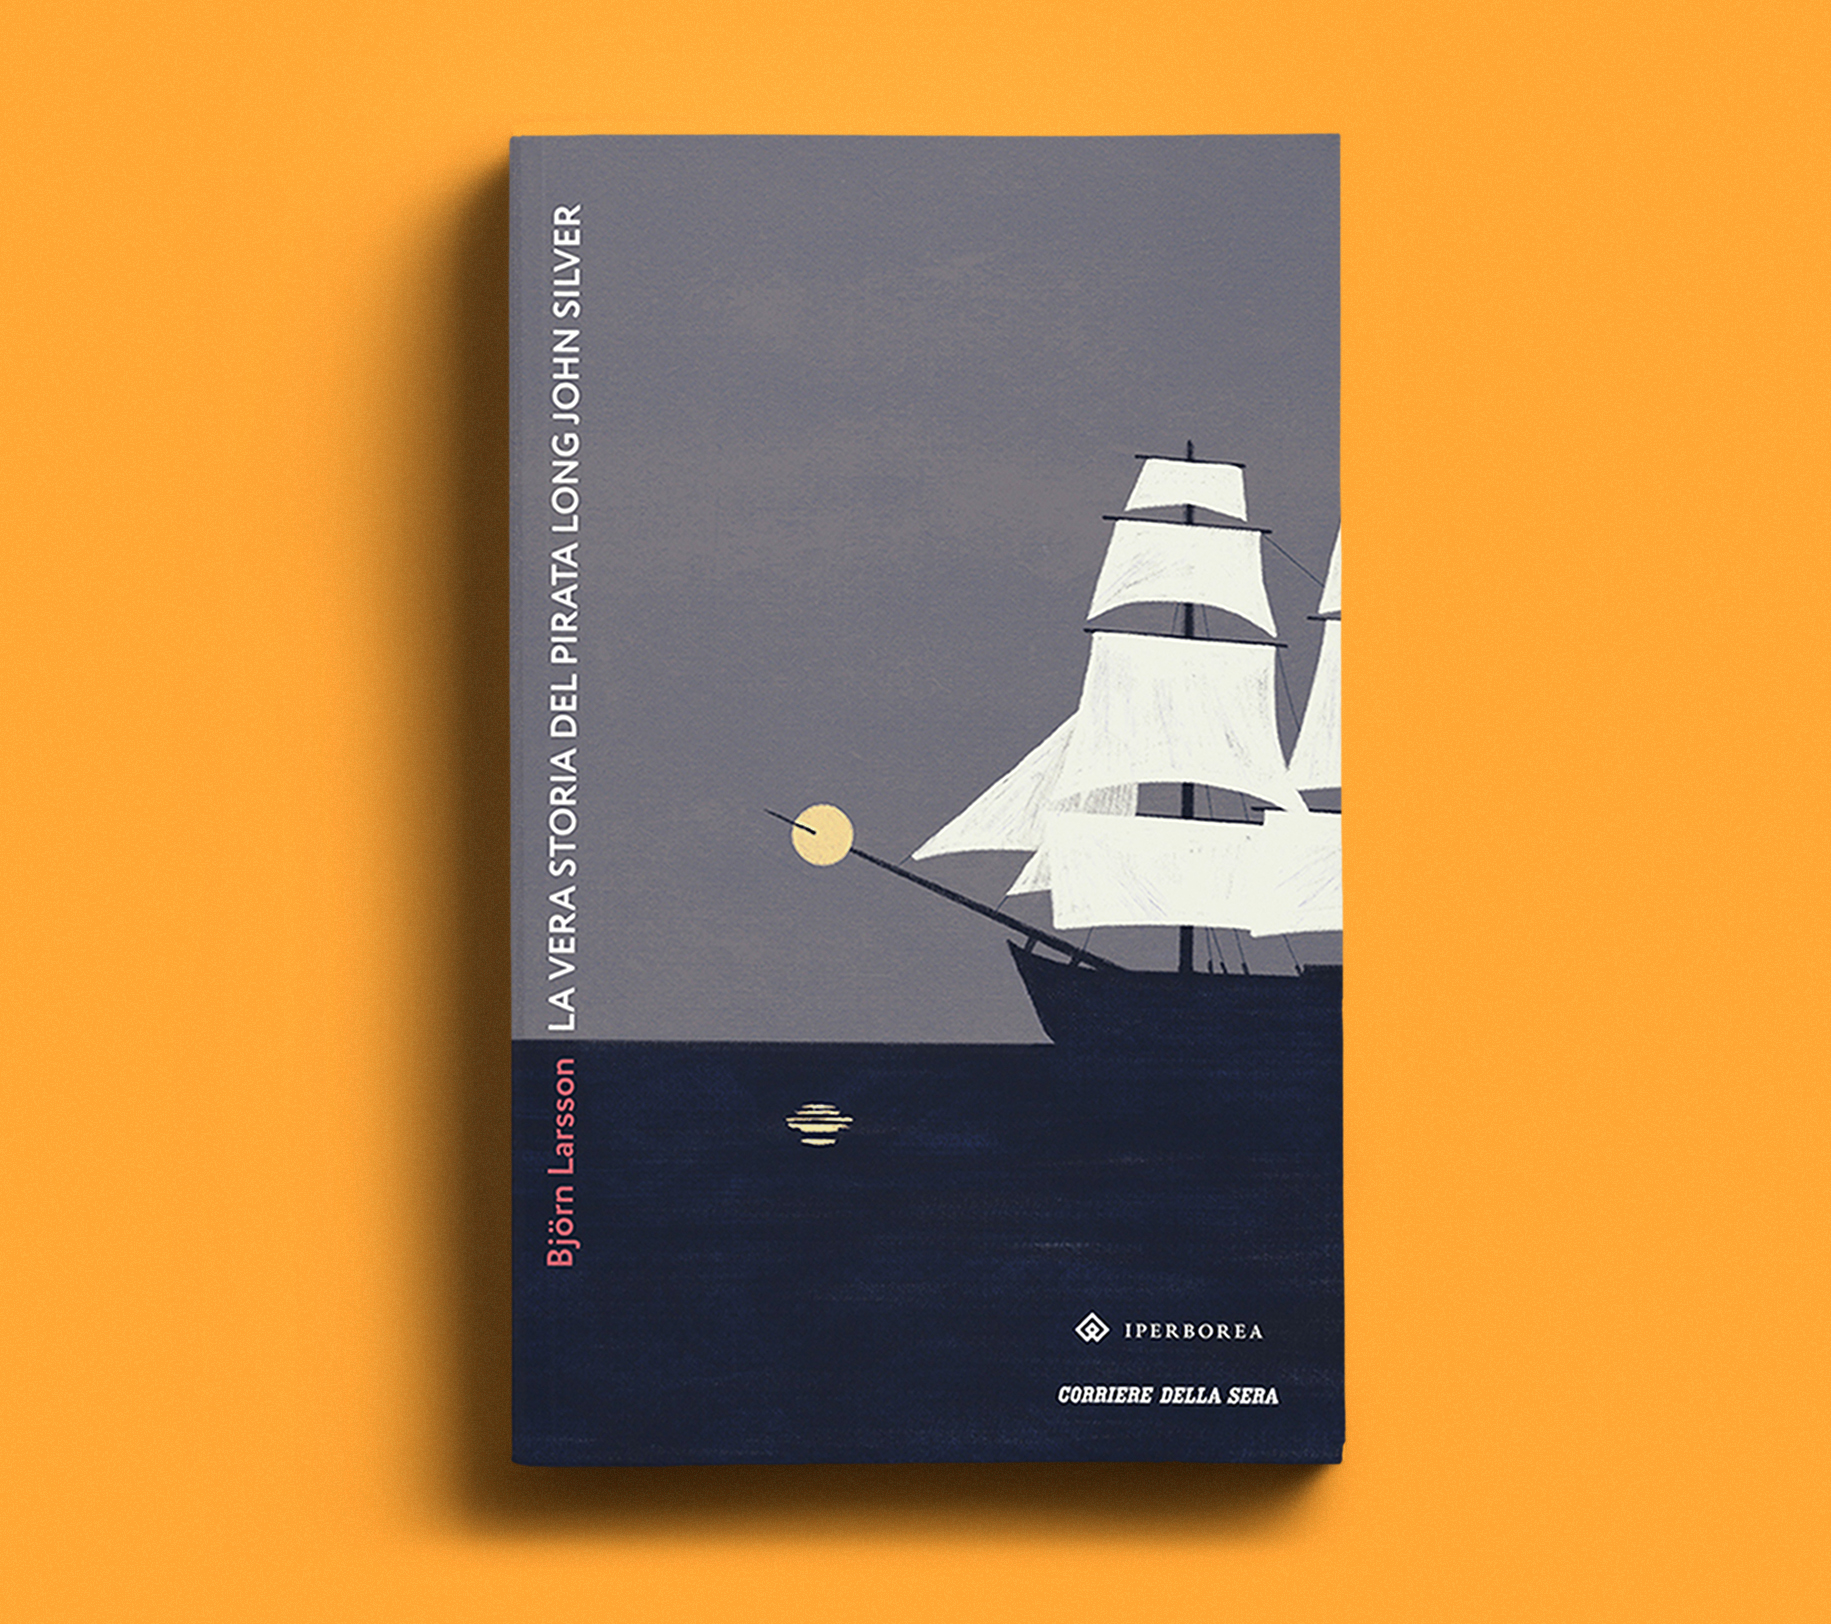 I Boreali book covers by chiara ghigliazza on Dribbble  Creative book cover  designs, Graphic design book cover, Book cover design inspiration